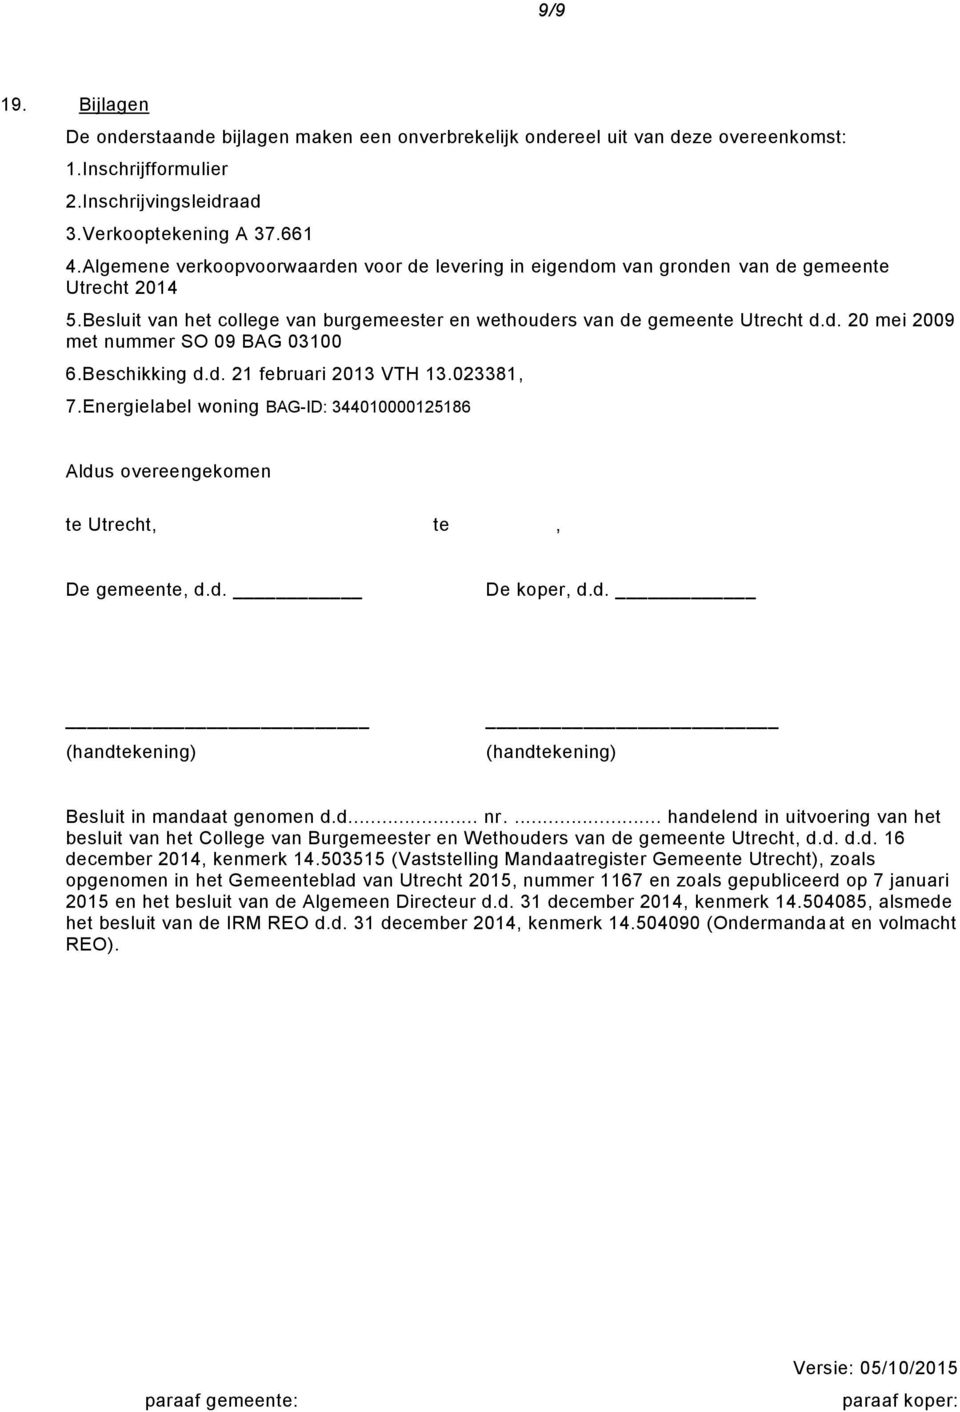 Beschikking d.d. 21 februari 2013 VTH 13.023381, 7.Energielabel woning BAG-ID: 344010000125186 Aldus overeengekomen te Utrecht, te, De gemeente, d.d. De koper, d.d. (handtekening) (handtekening) Besluit in mandaat genomen d.